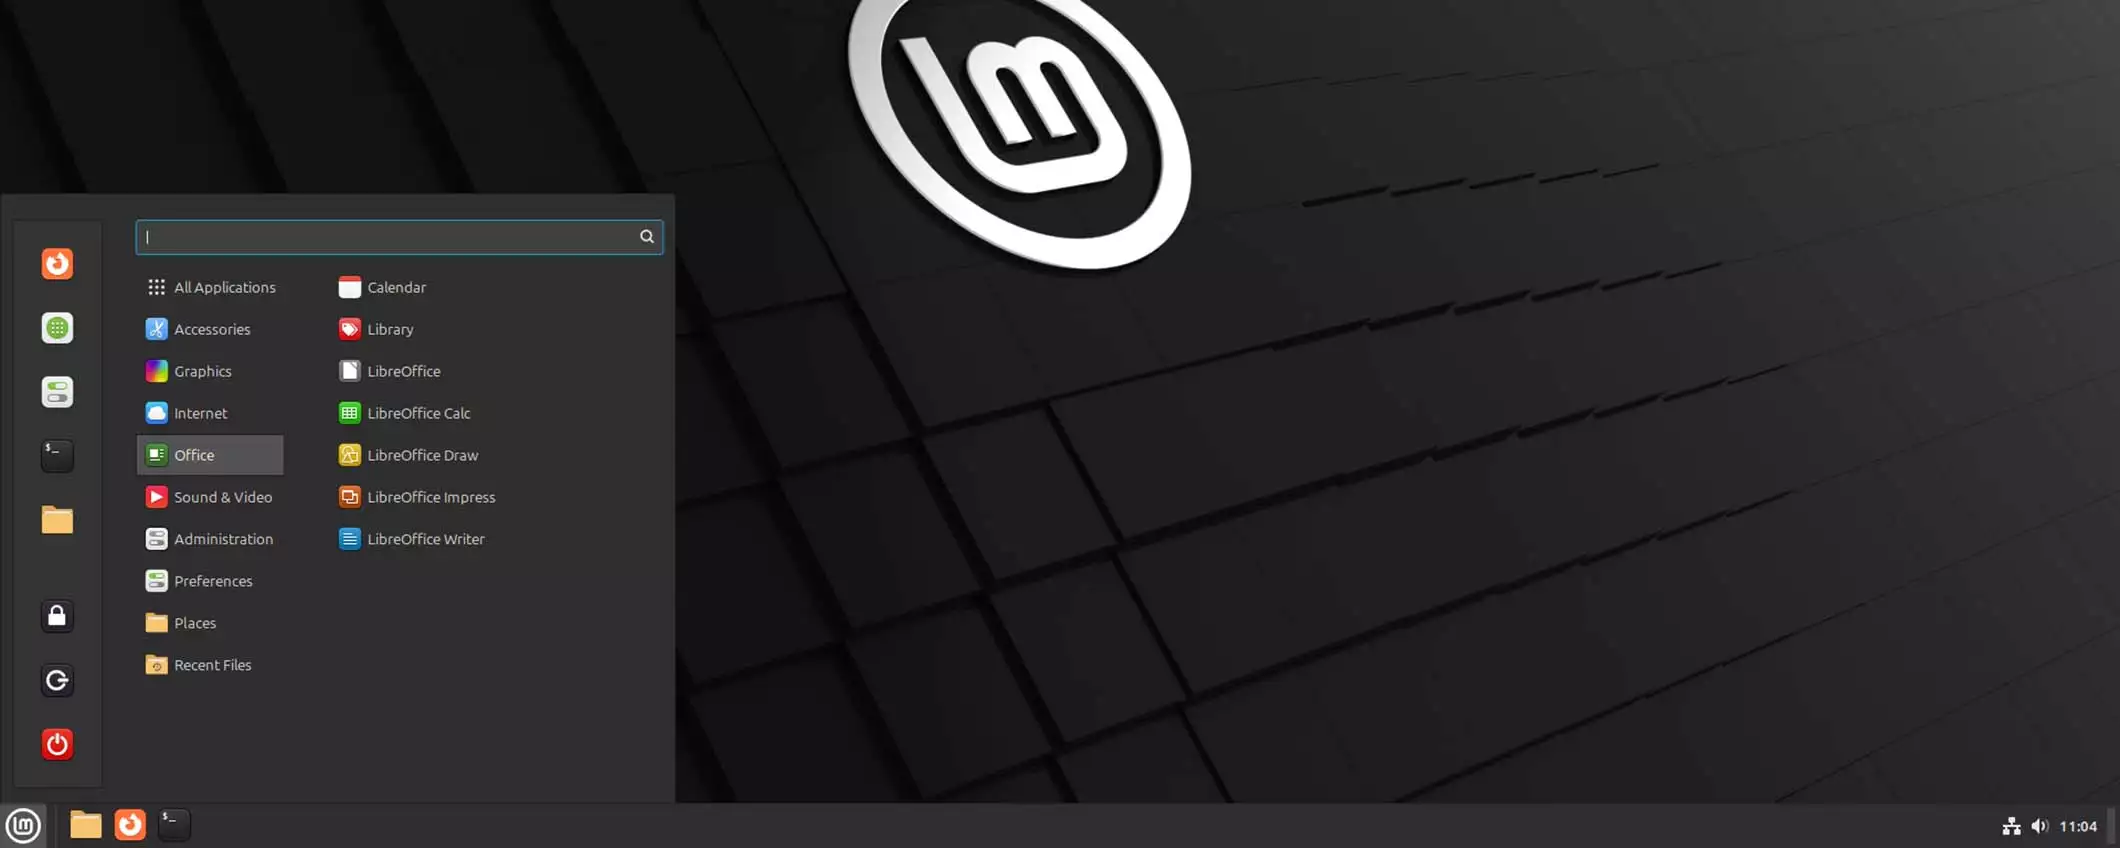 Linux Mint 22 Beta finalmente disponibile al pubblico